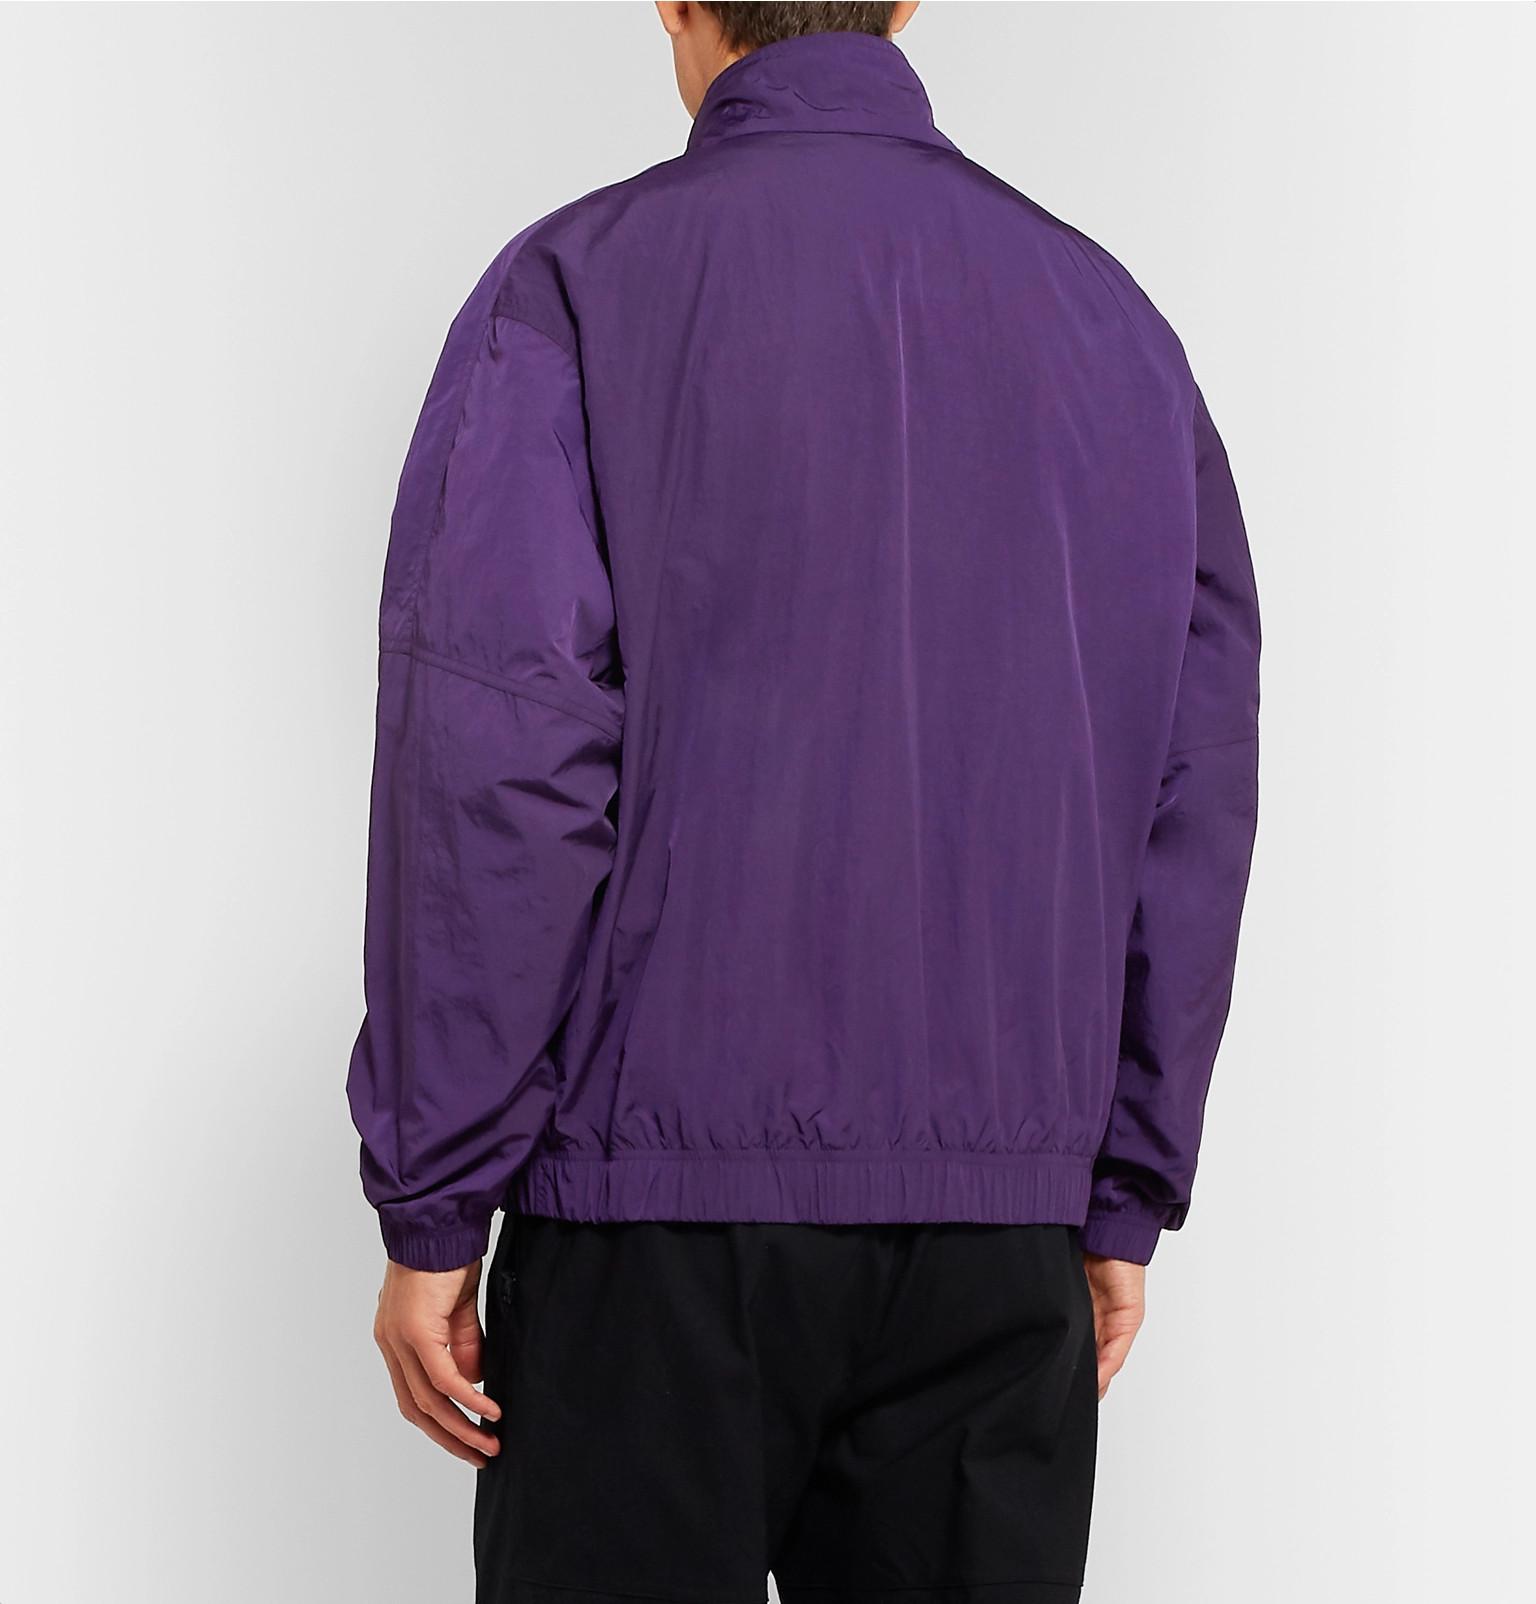 nike track jacket purple